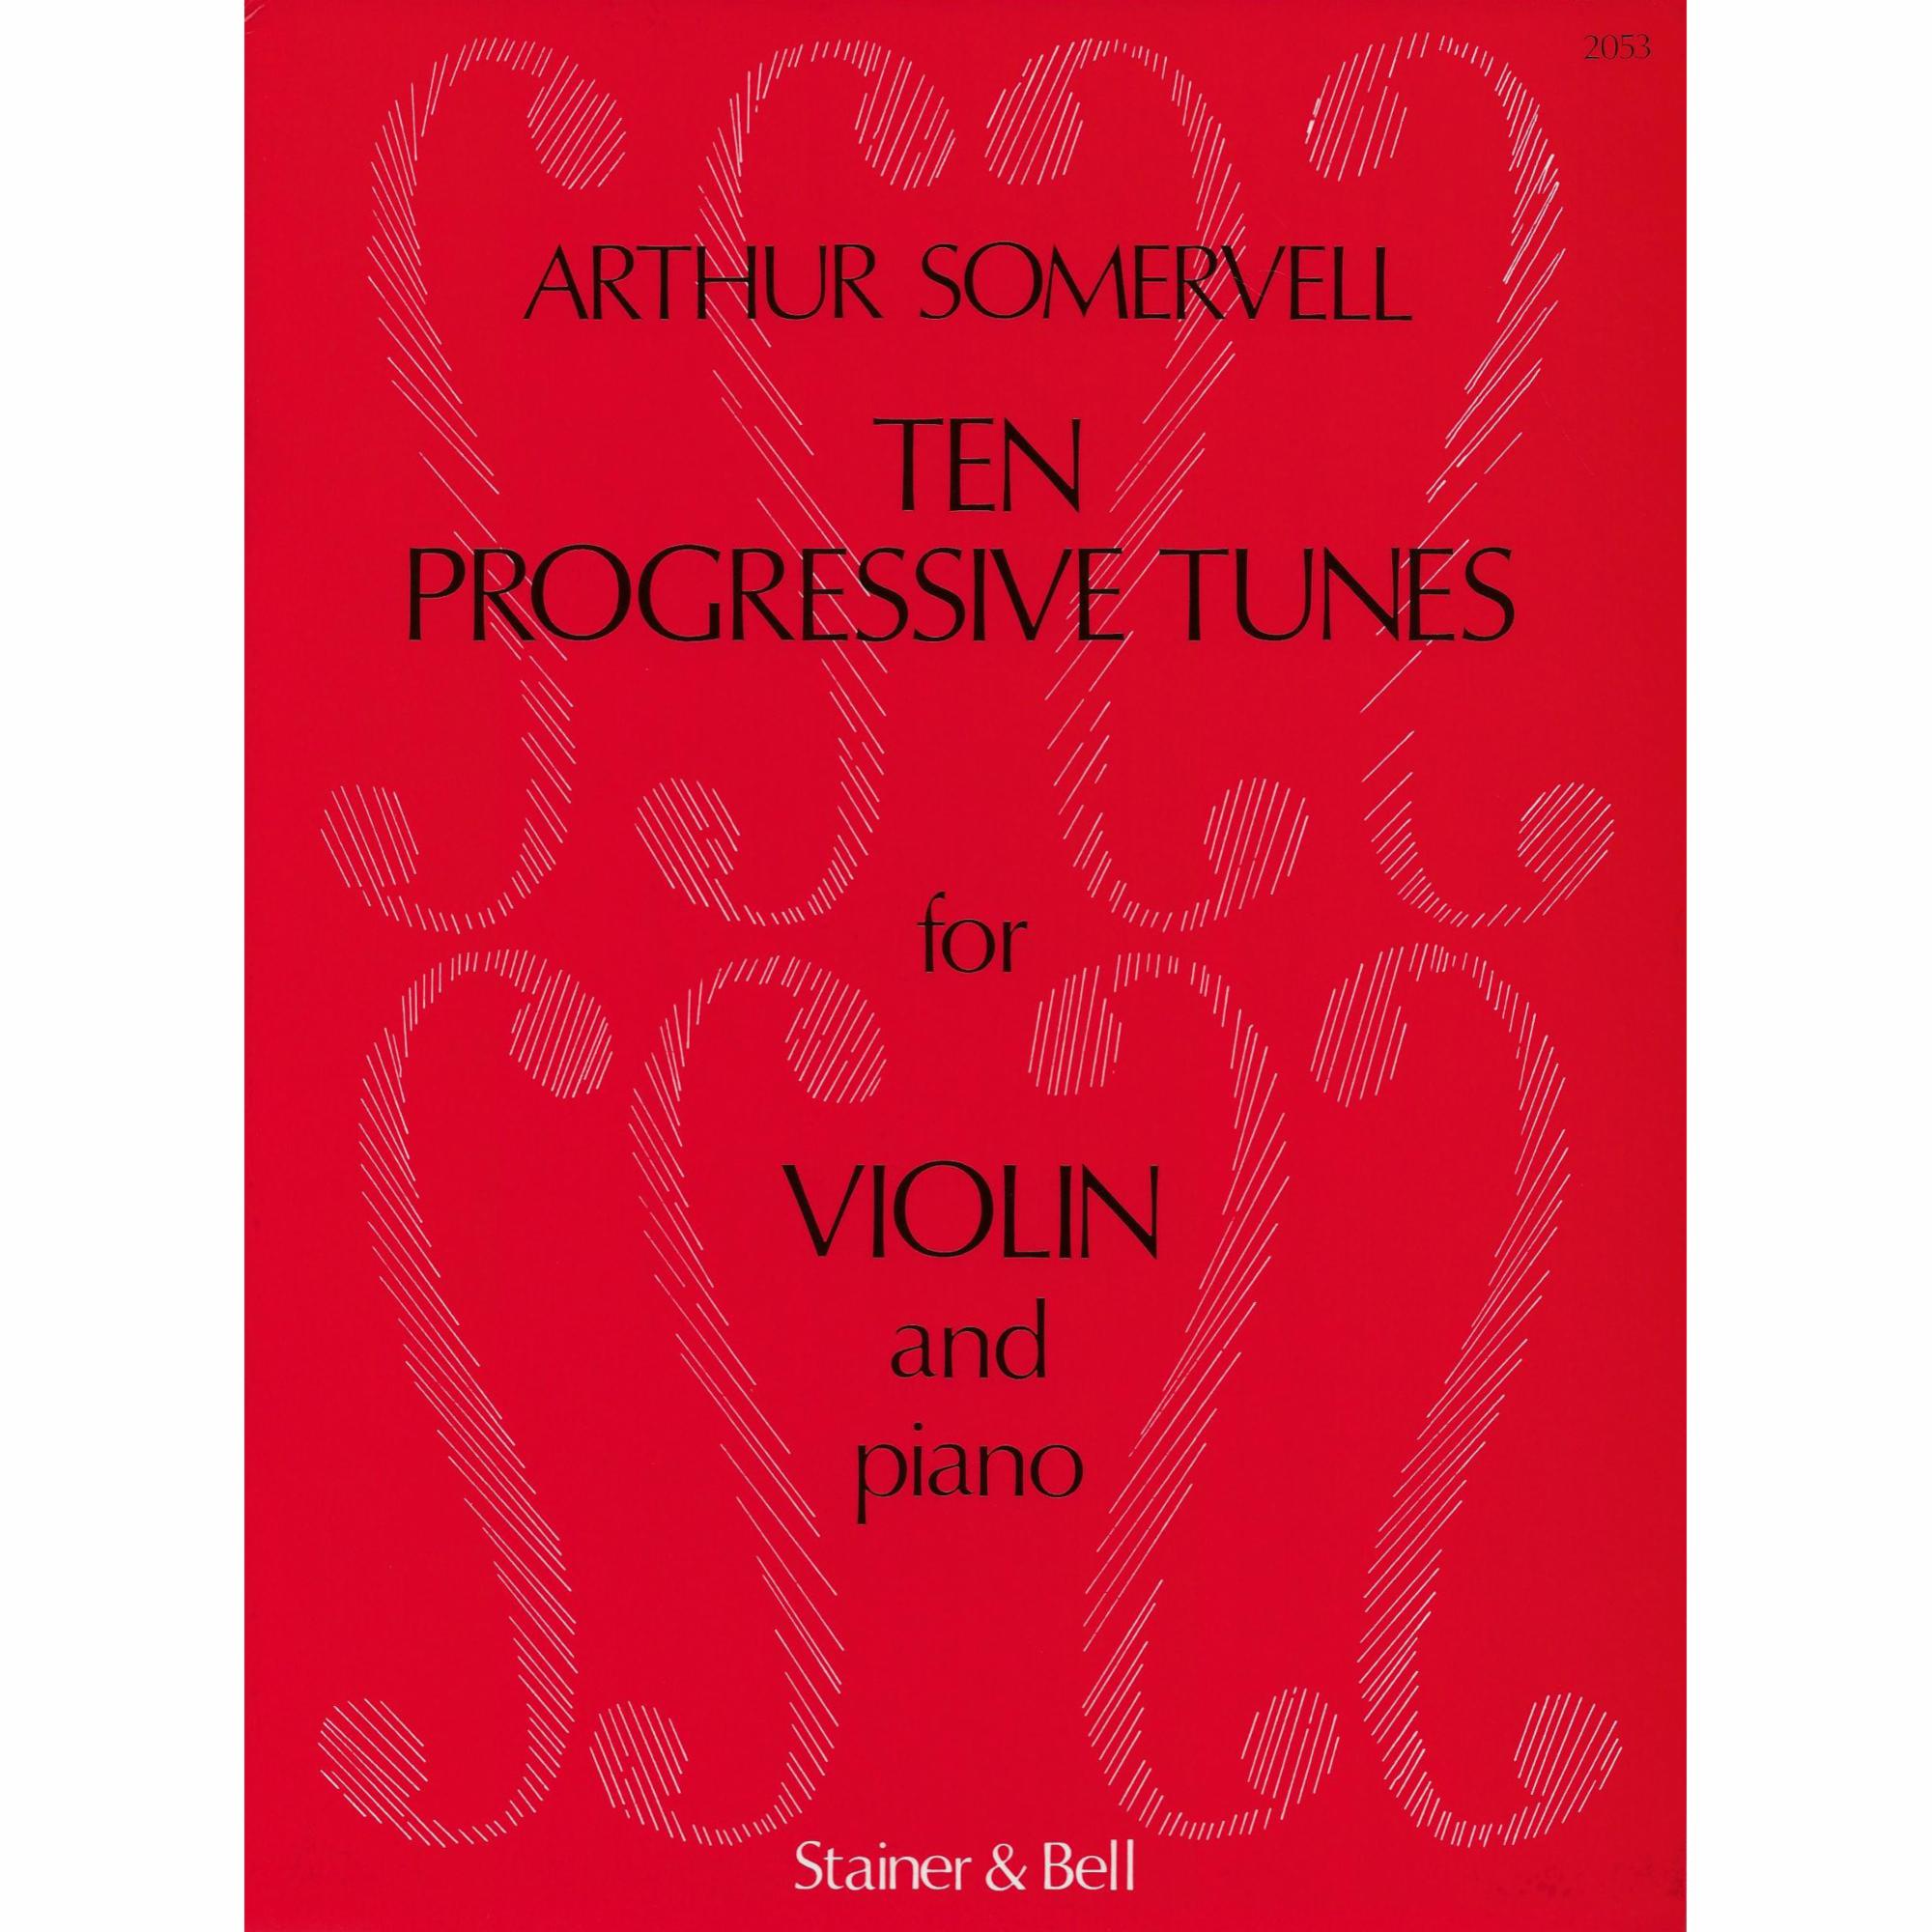 Ten Progressive Tunes for Violin and Piano